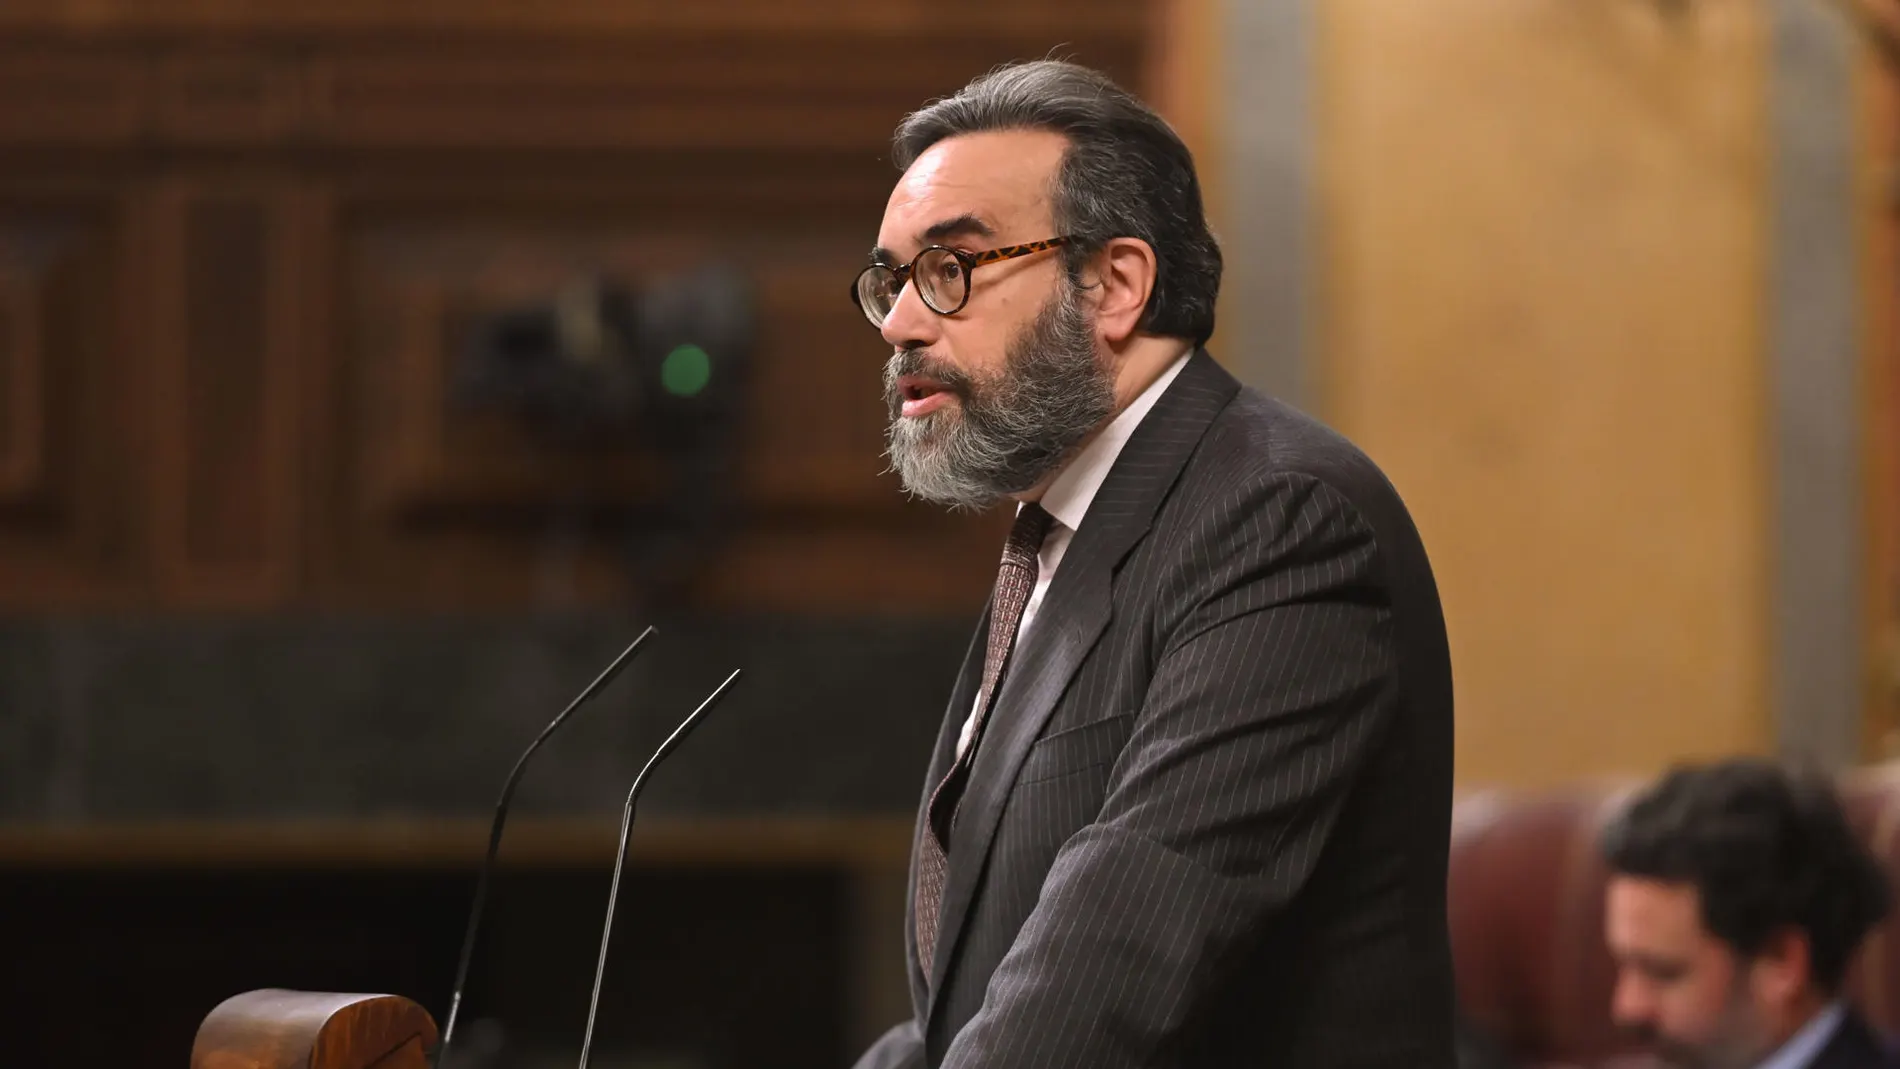 El diputado de Vox José María Sánchez interviene en el Congreso